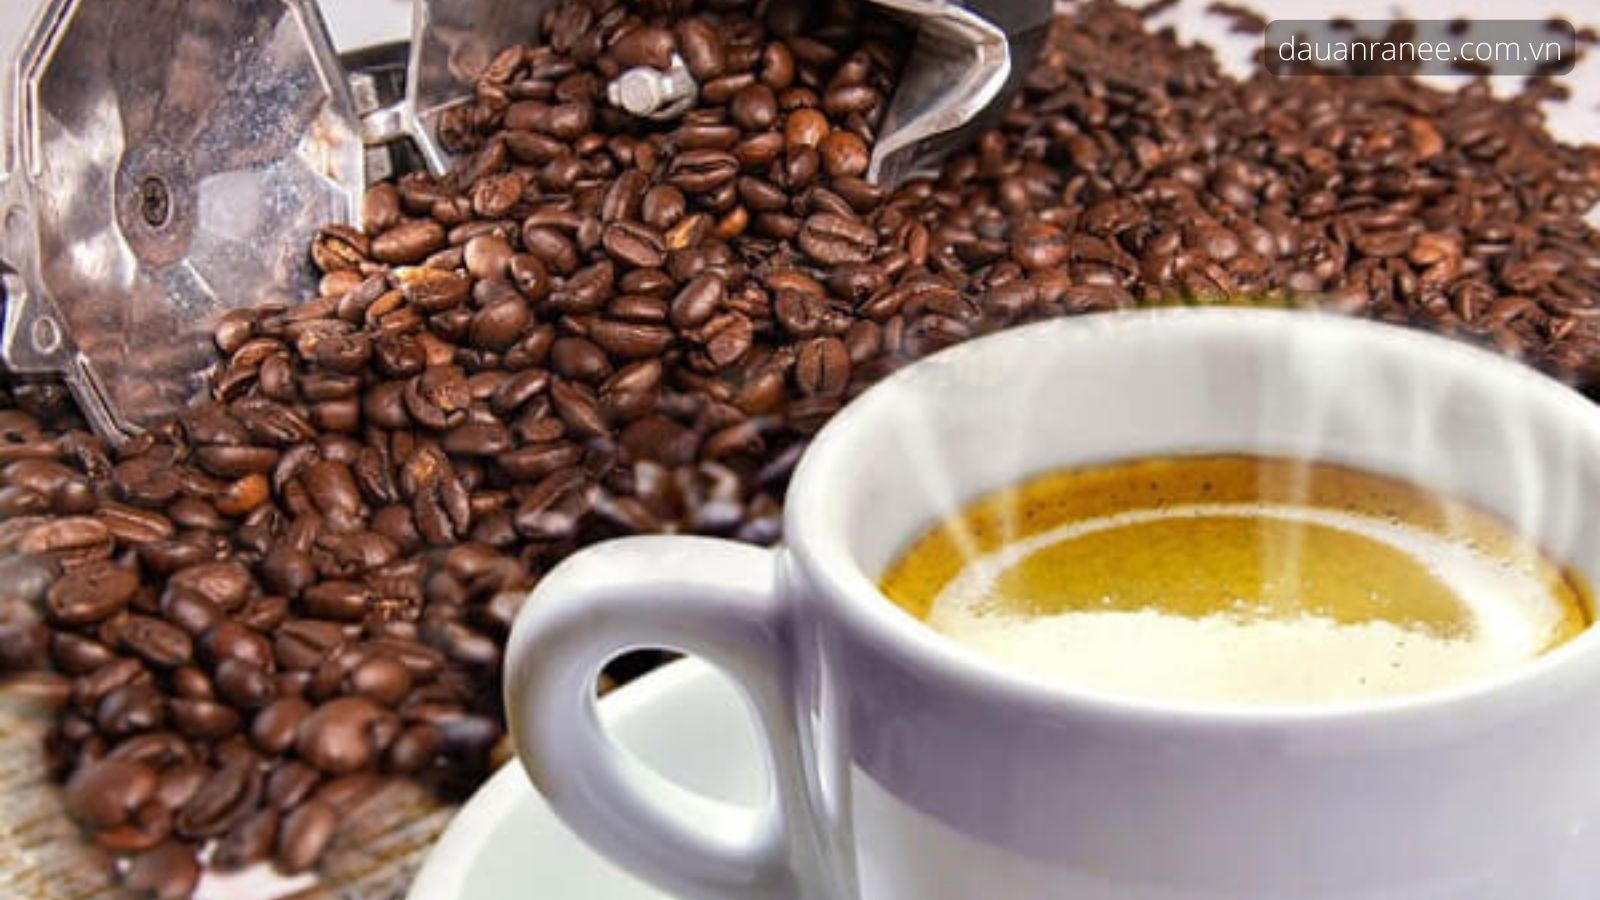 Cà phê Cầu Đất – Moka hảo hạng Đà Lạt - Món đặc sản Đà Lạt